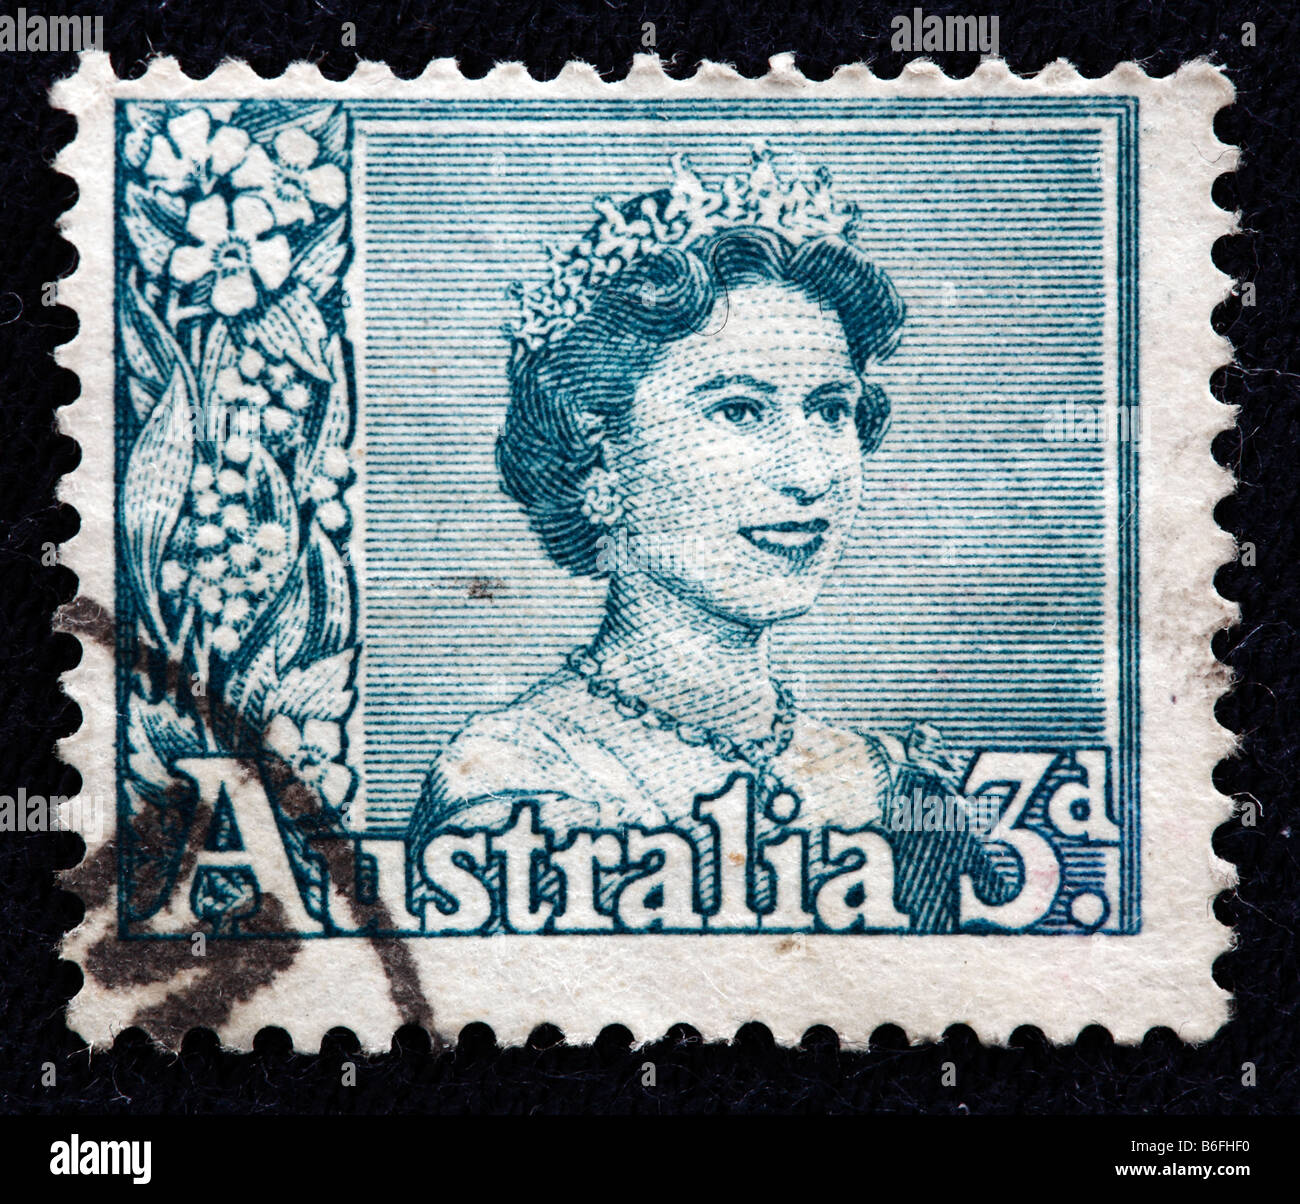 Königin Elizabeth II des Vereinigten Königreichs (1952, präsentieren), Briefmarke, Australien Stockfoto